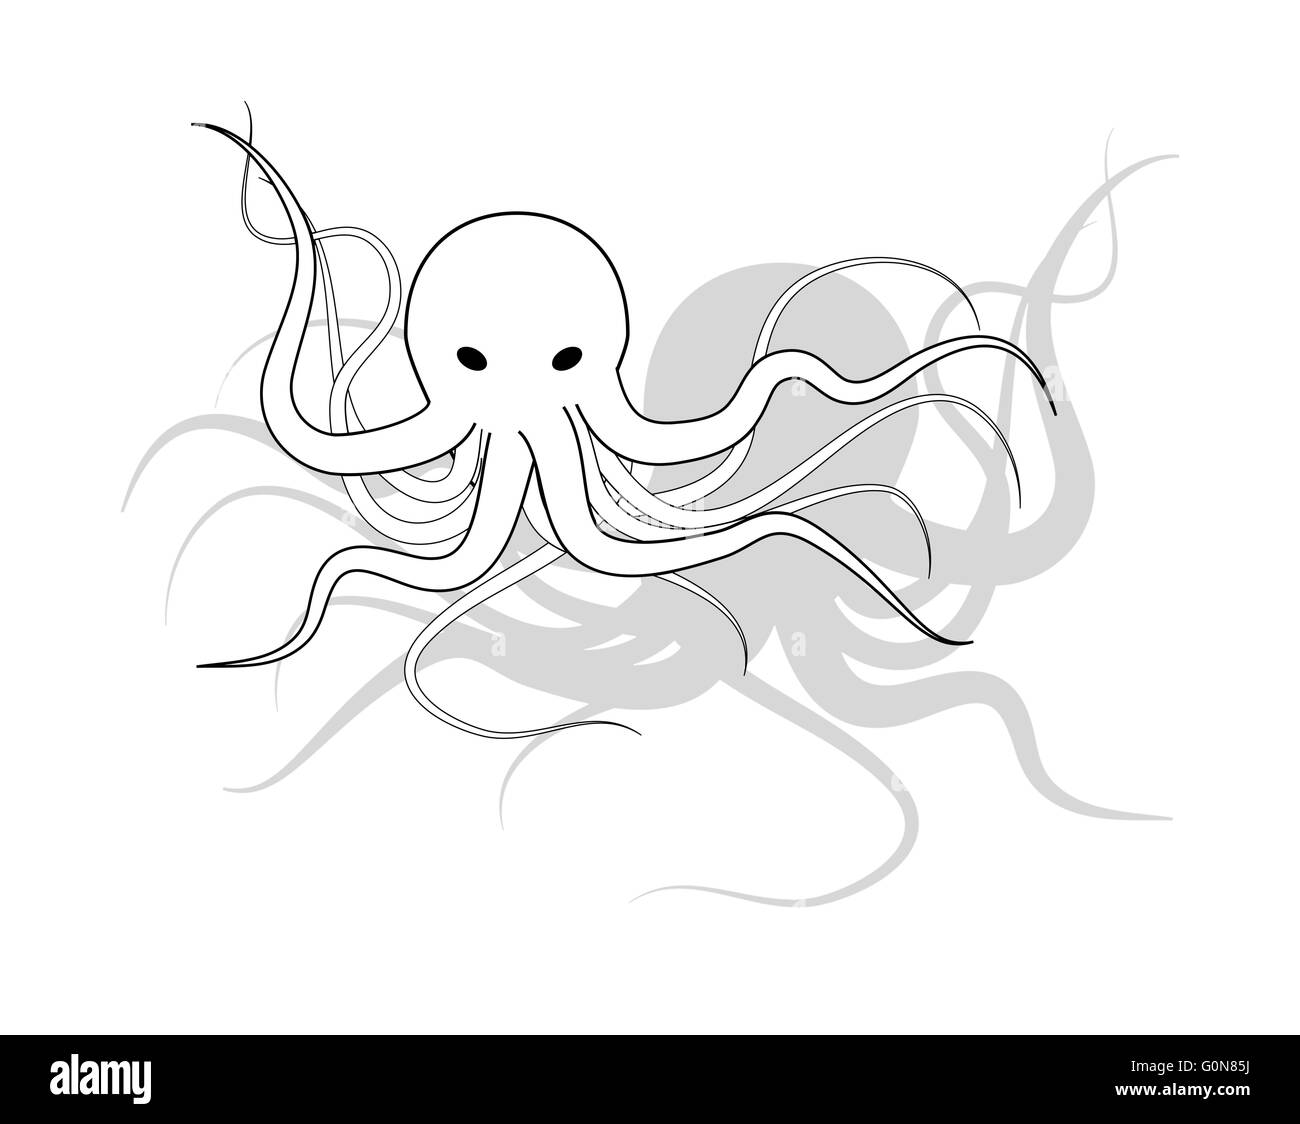 Illustration de la pieuvre, dessin en noir et blanc Banque D'Images